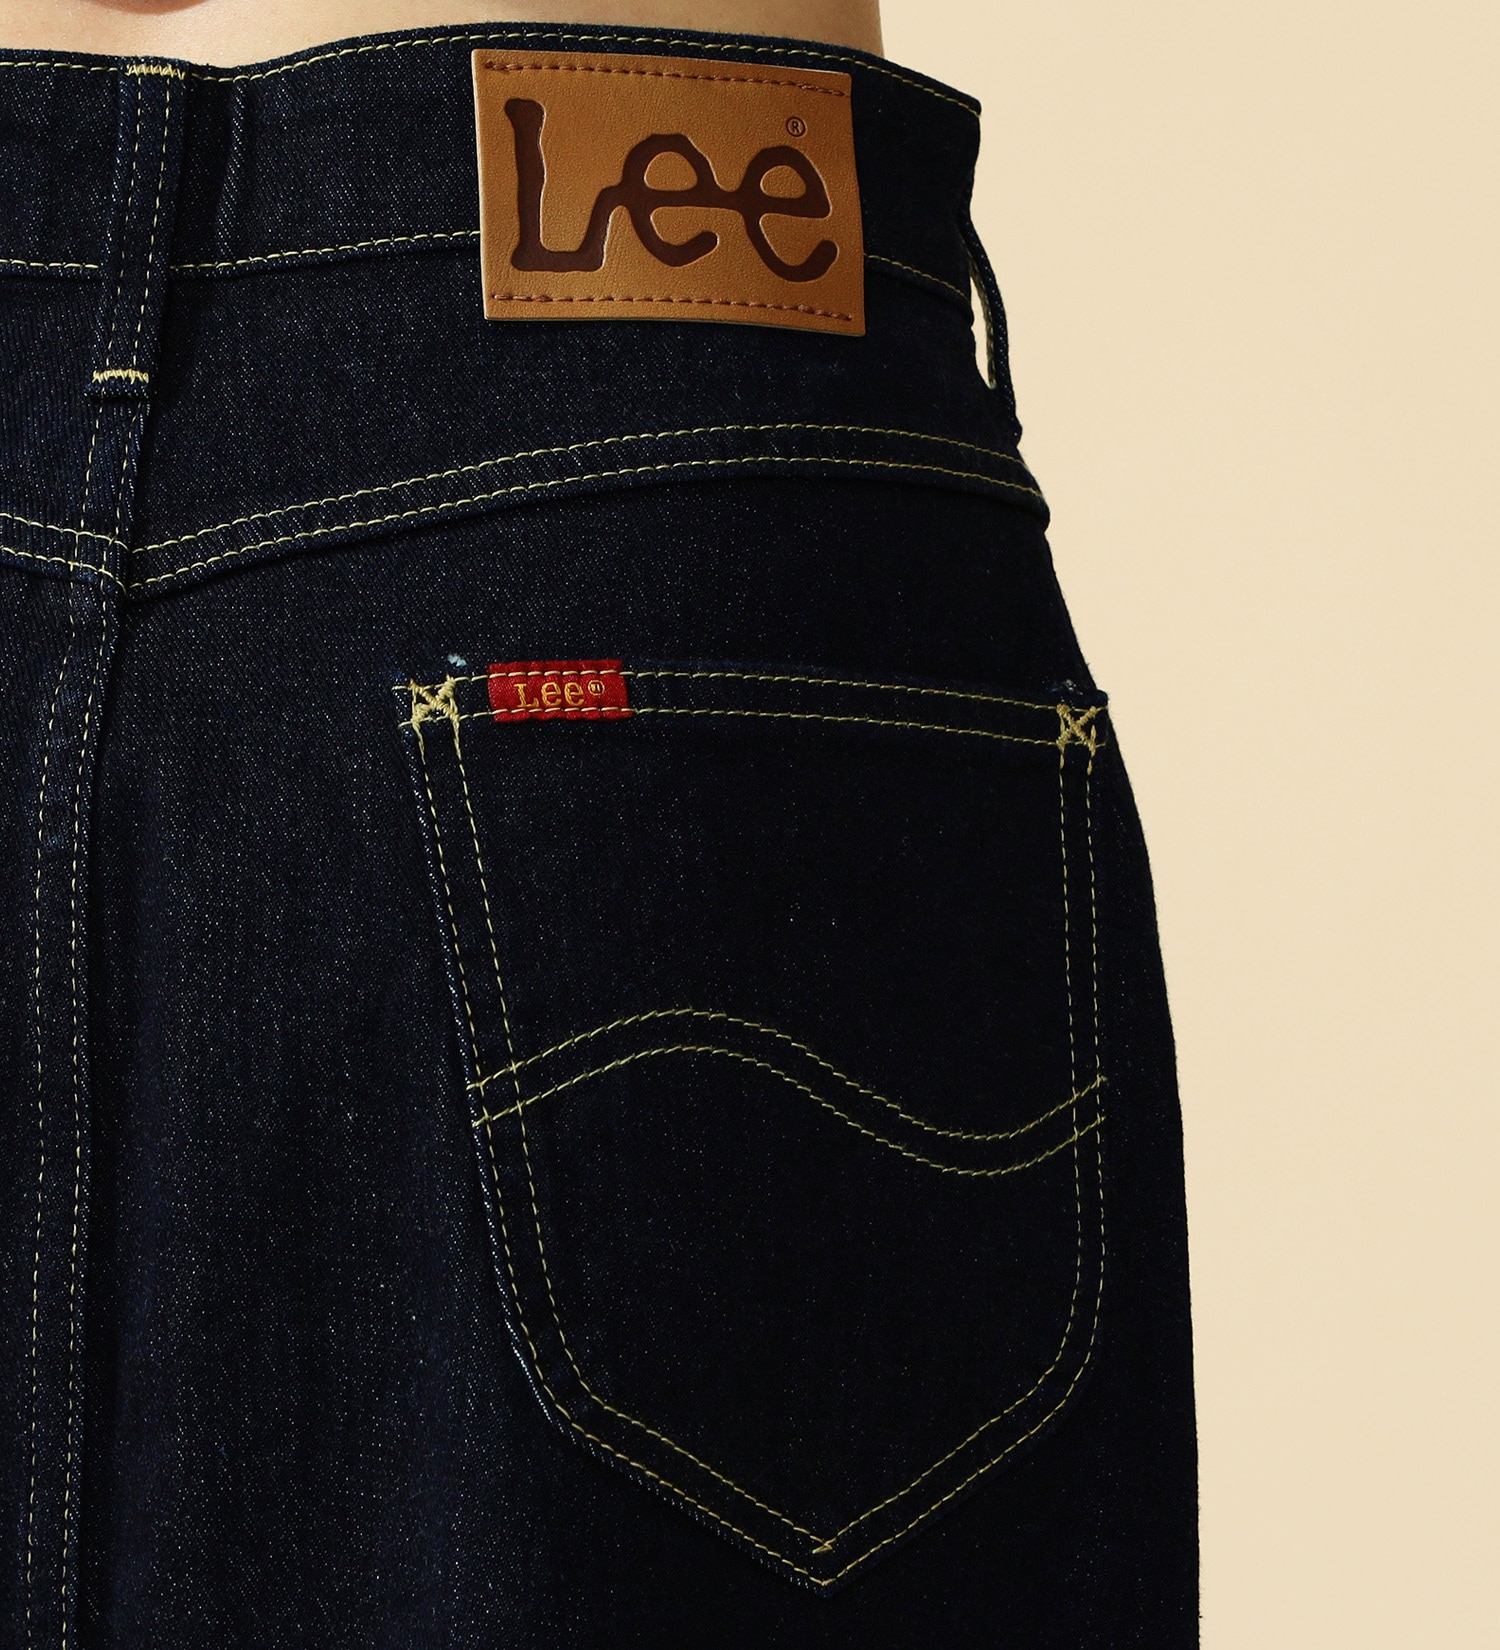 Lee(リー)の【試着対象】【2024年春夏モデル】Lee BABE ストレッチ/ミドル丈デニムスカート サイズ展開XS-XL|スカート/デニムスカート/レディース|インディゴブルー